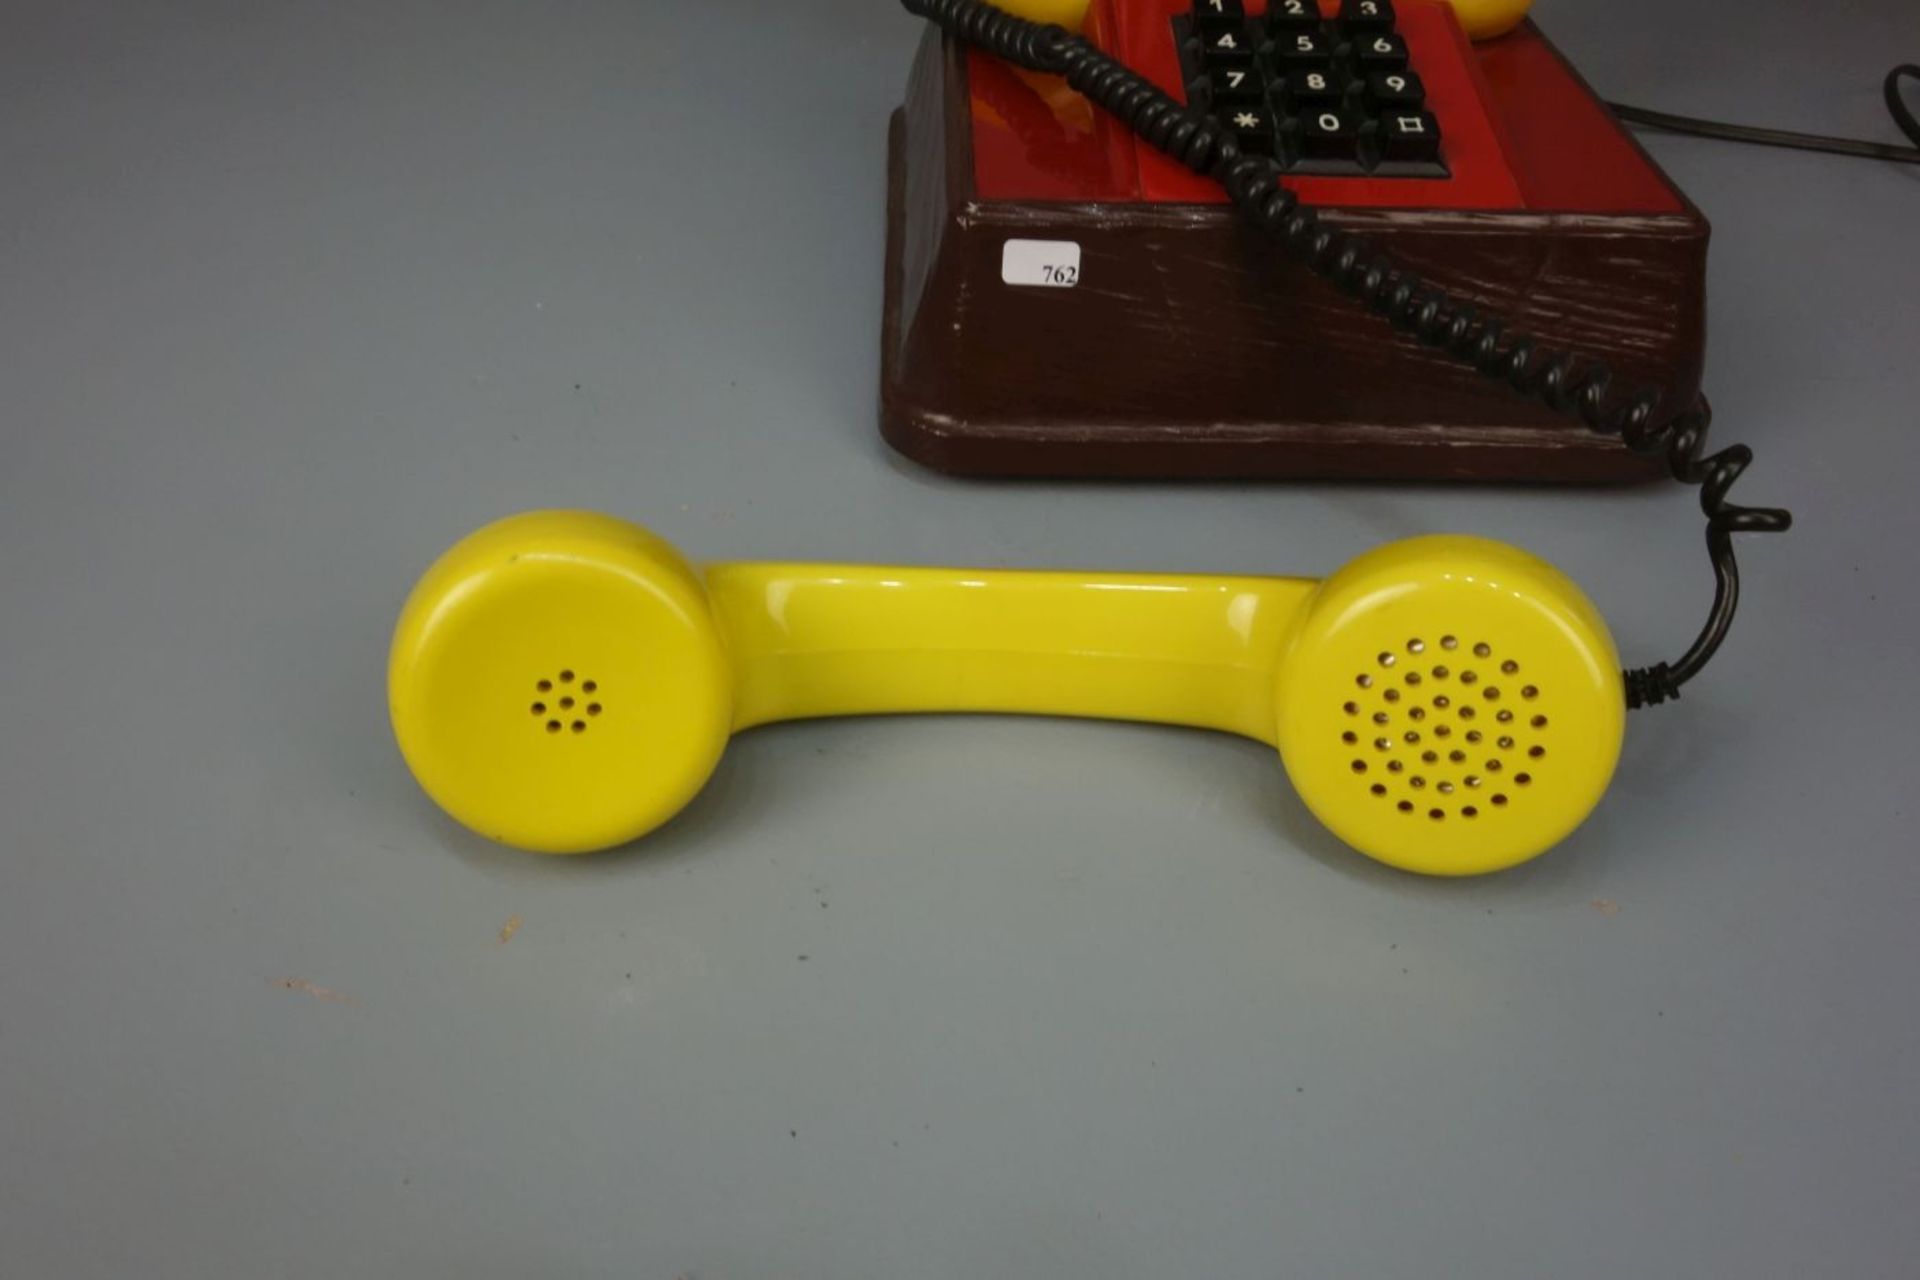 FIGÜRLICHES TELEFON "Micky Maus", 1970er Jahre, unter dem Stand bezeichnet "American - Image 5 of 5